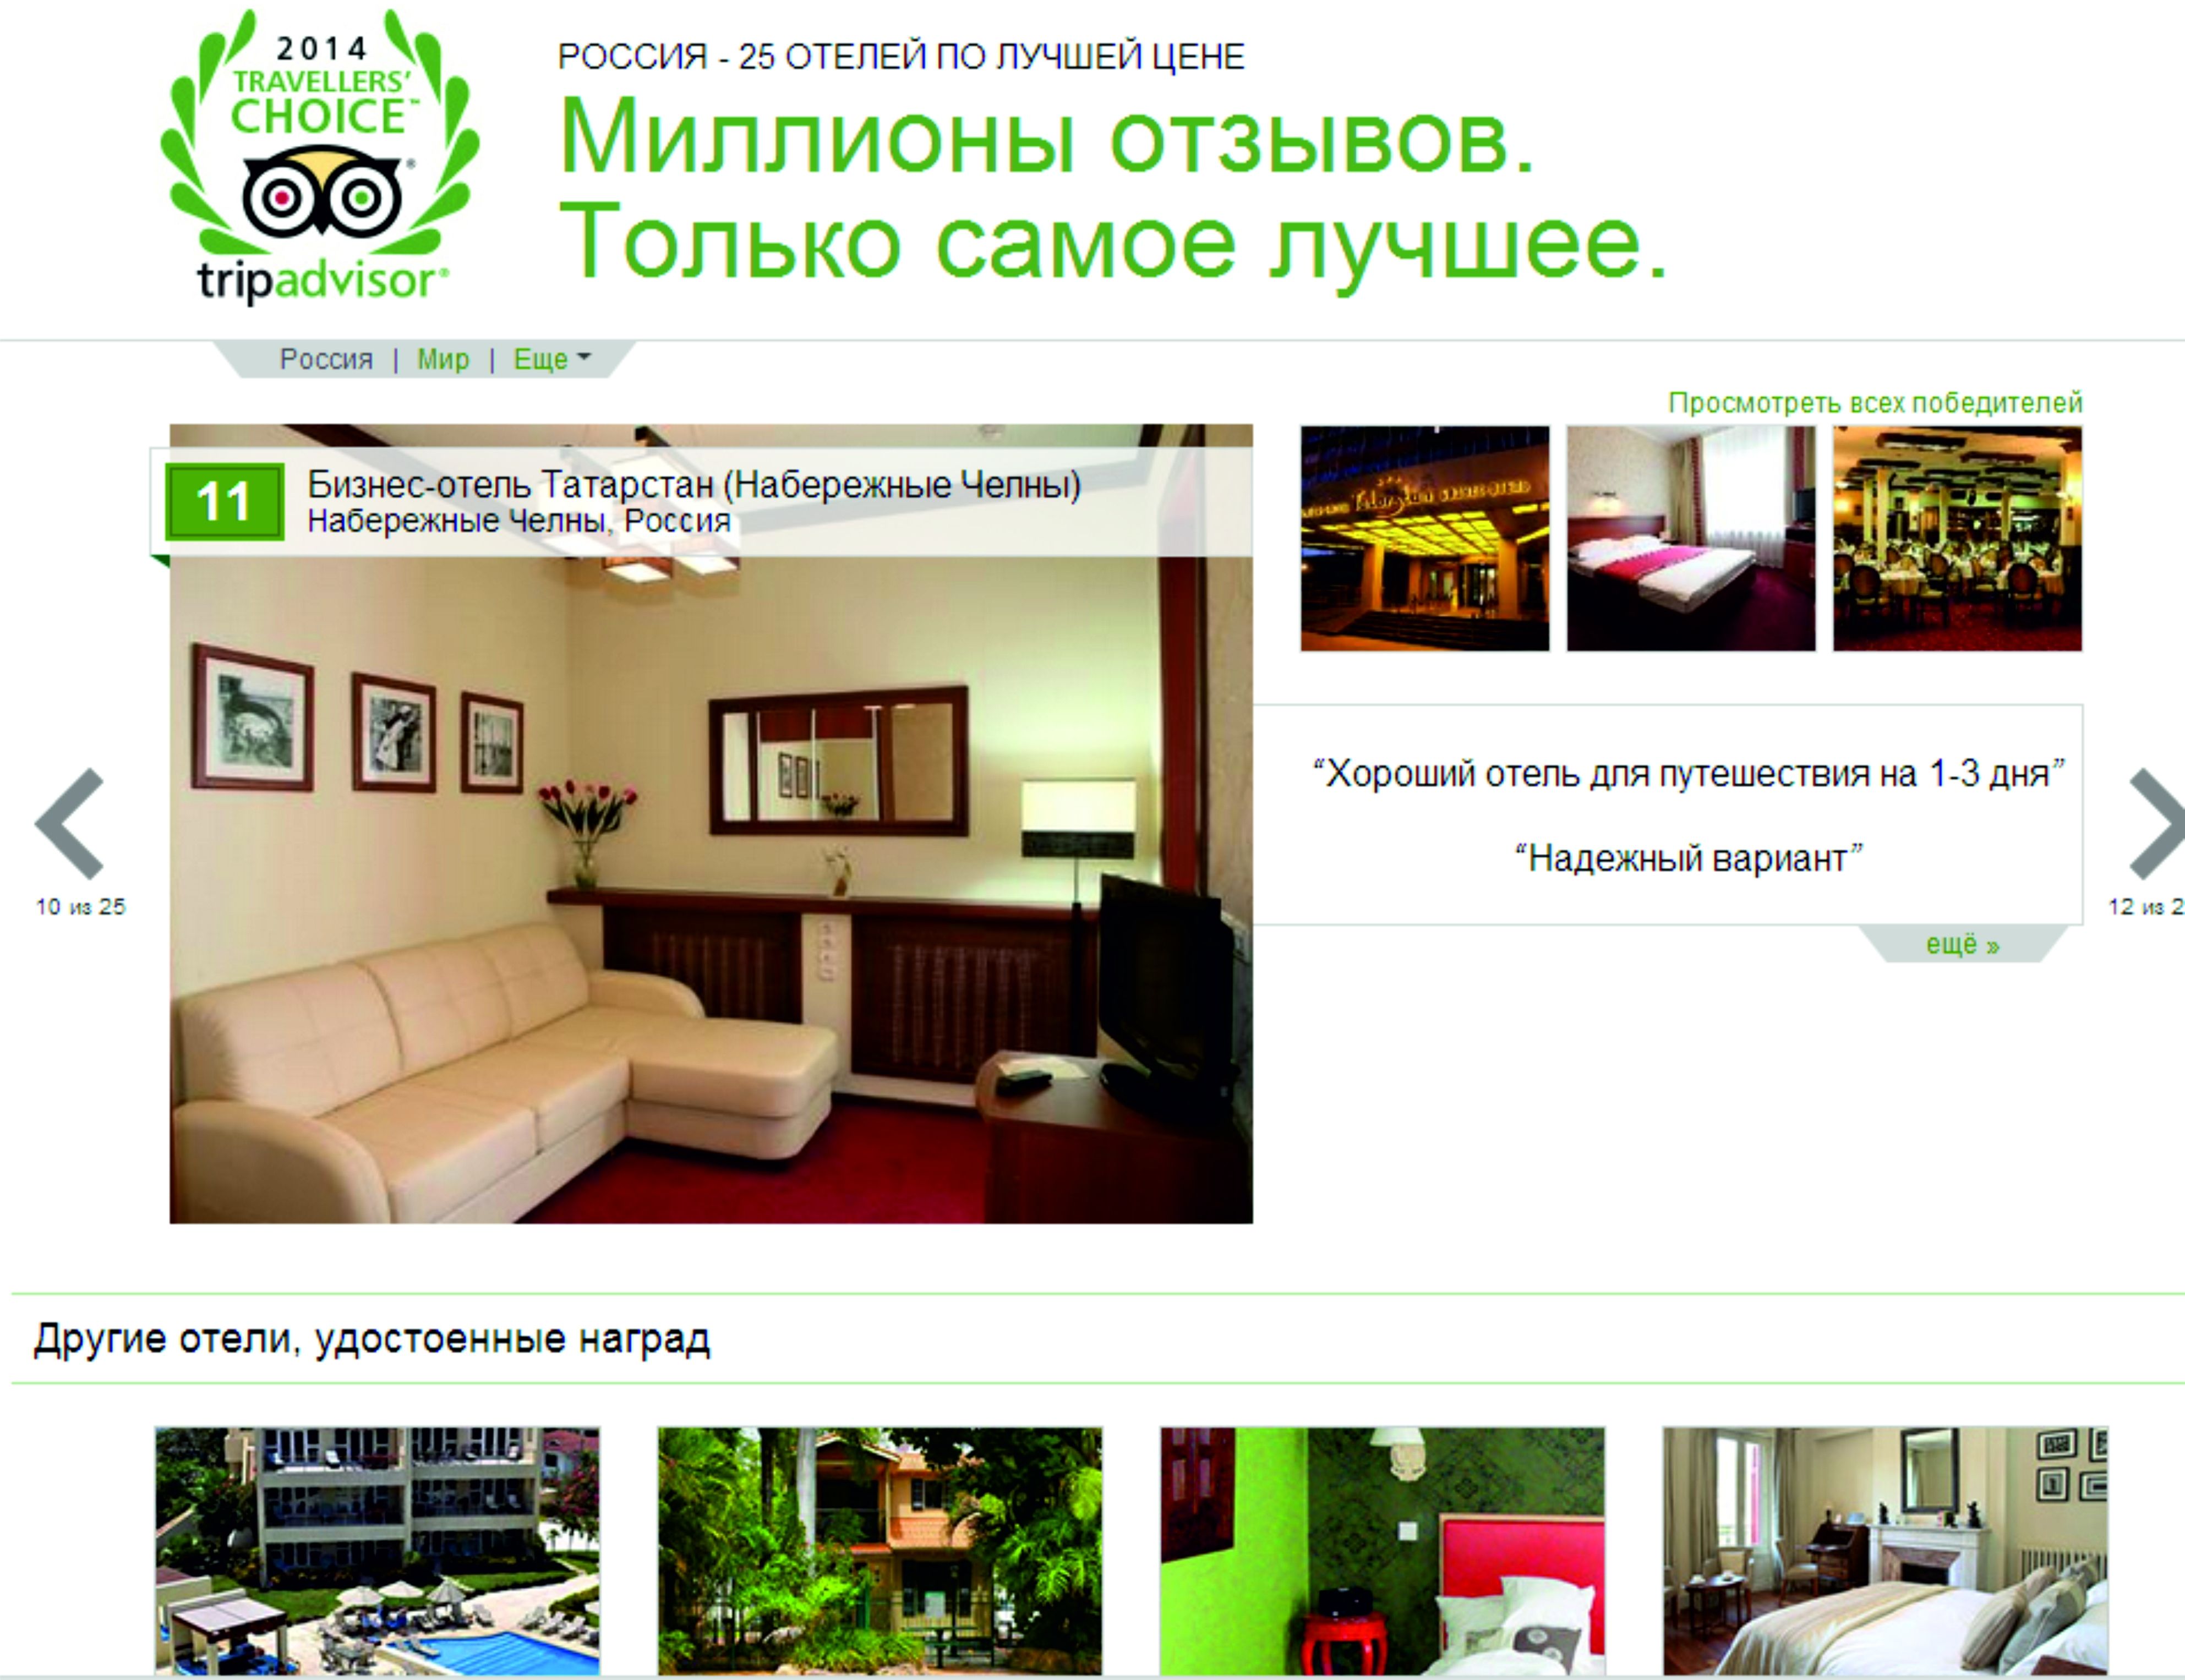 Реклама бизнес отеля Татарстан